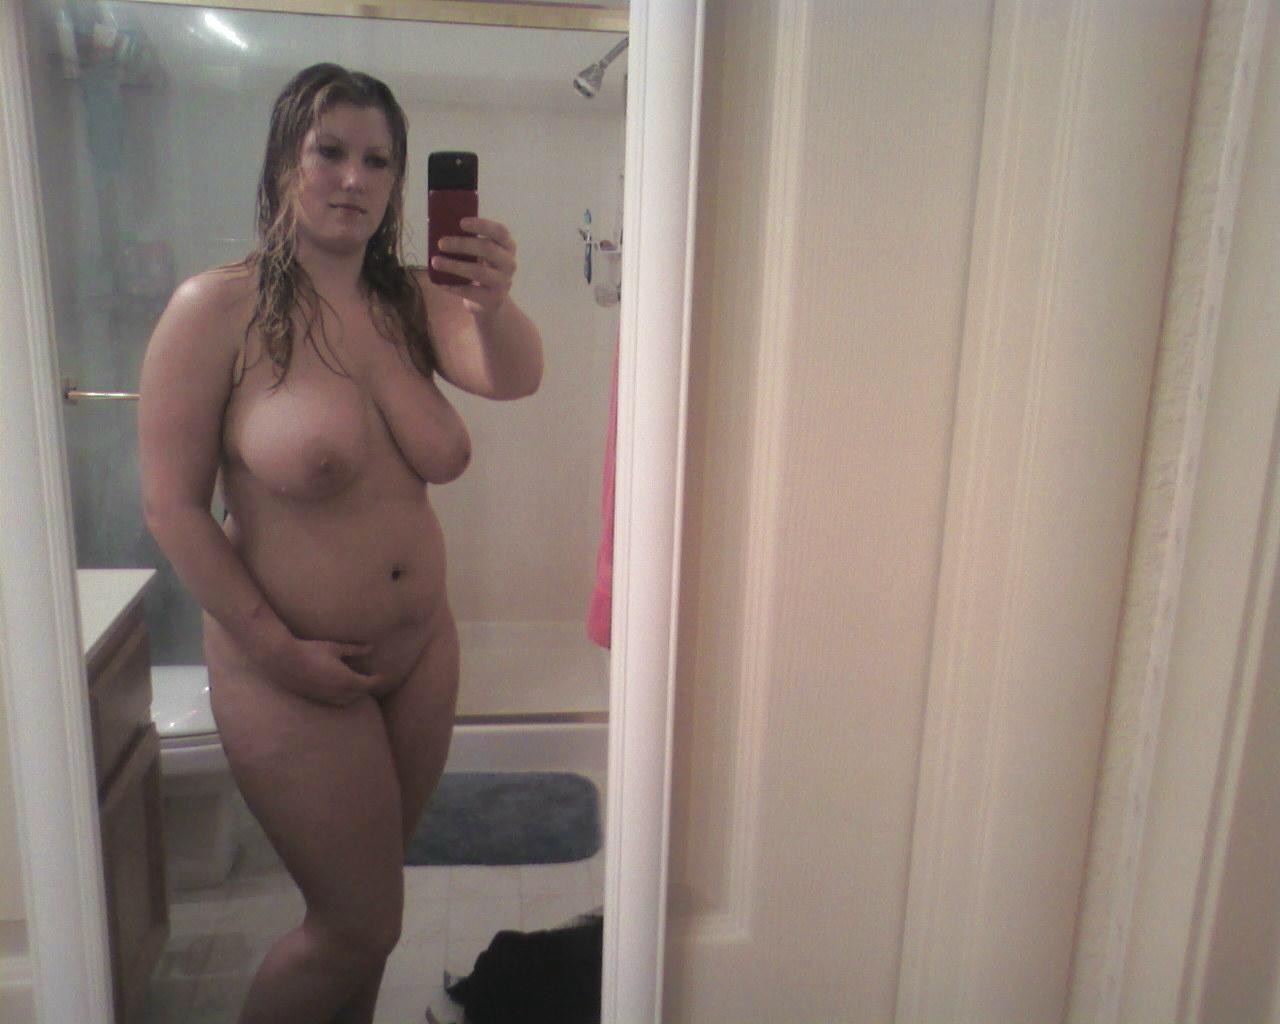 nerd girl nude selfies